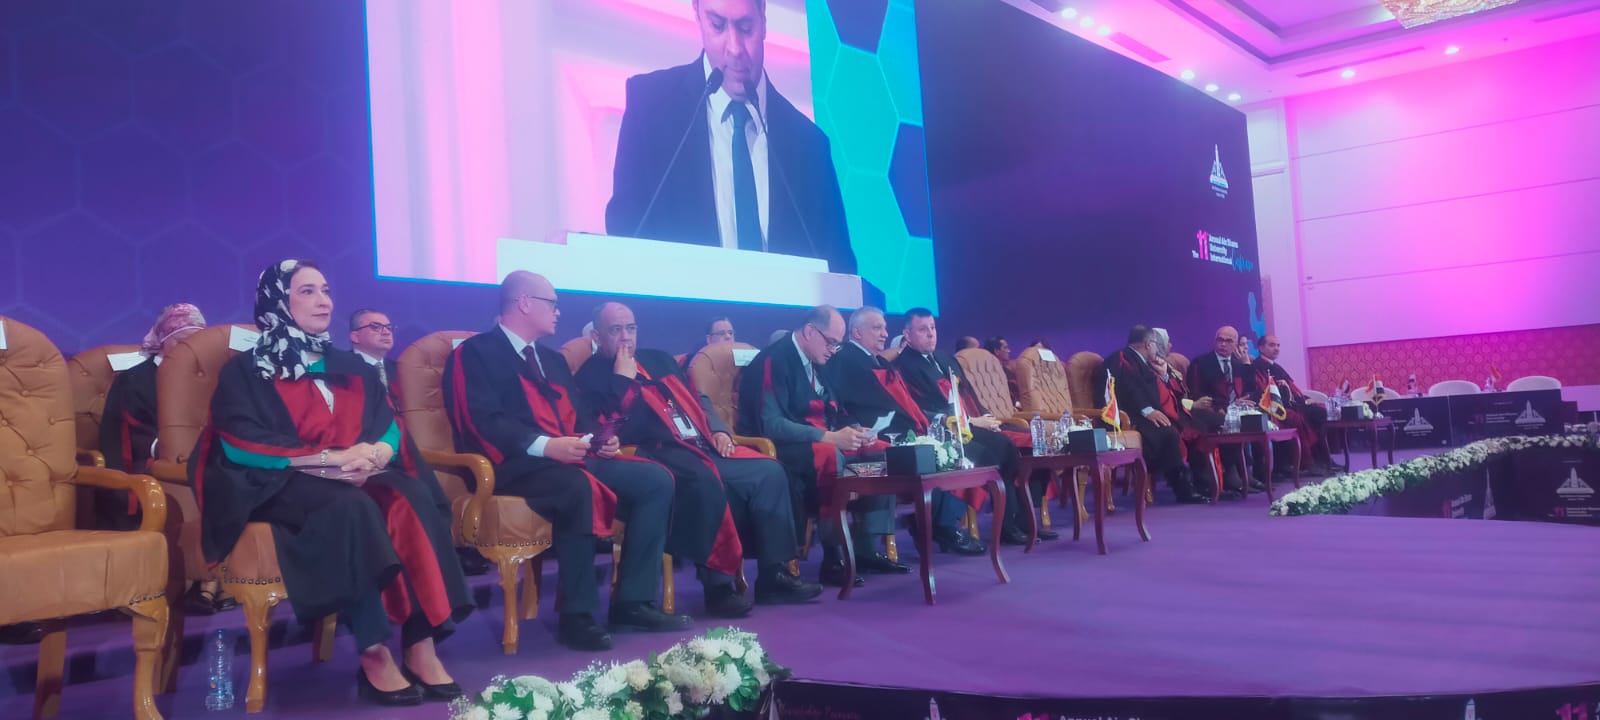 رئيس جامعة عين شمس يفتتح المؤتمر الدولى السنوى الـ11 للجامعة (1)